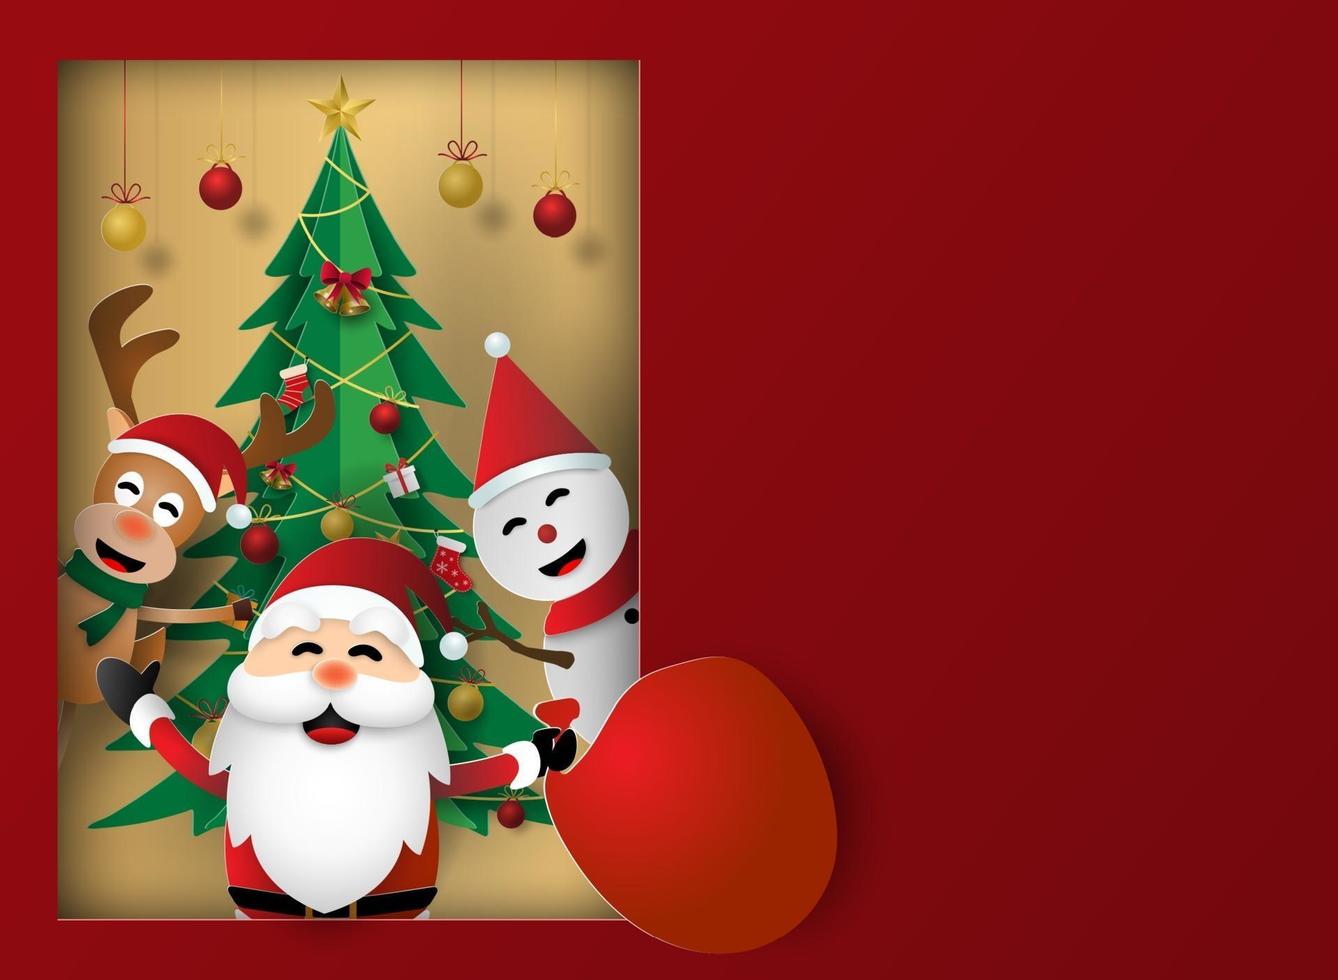 hristmas party, vrolijk kerstfeest, kan worden gebruikt voor kaart, poster, banner vector